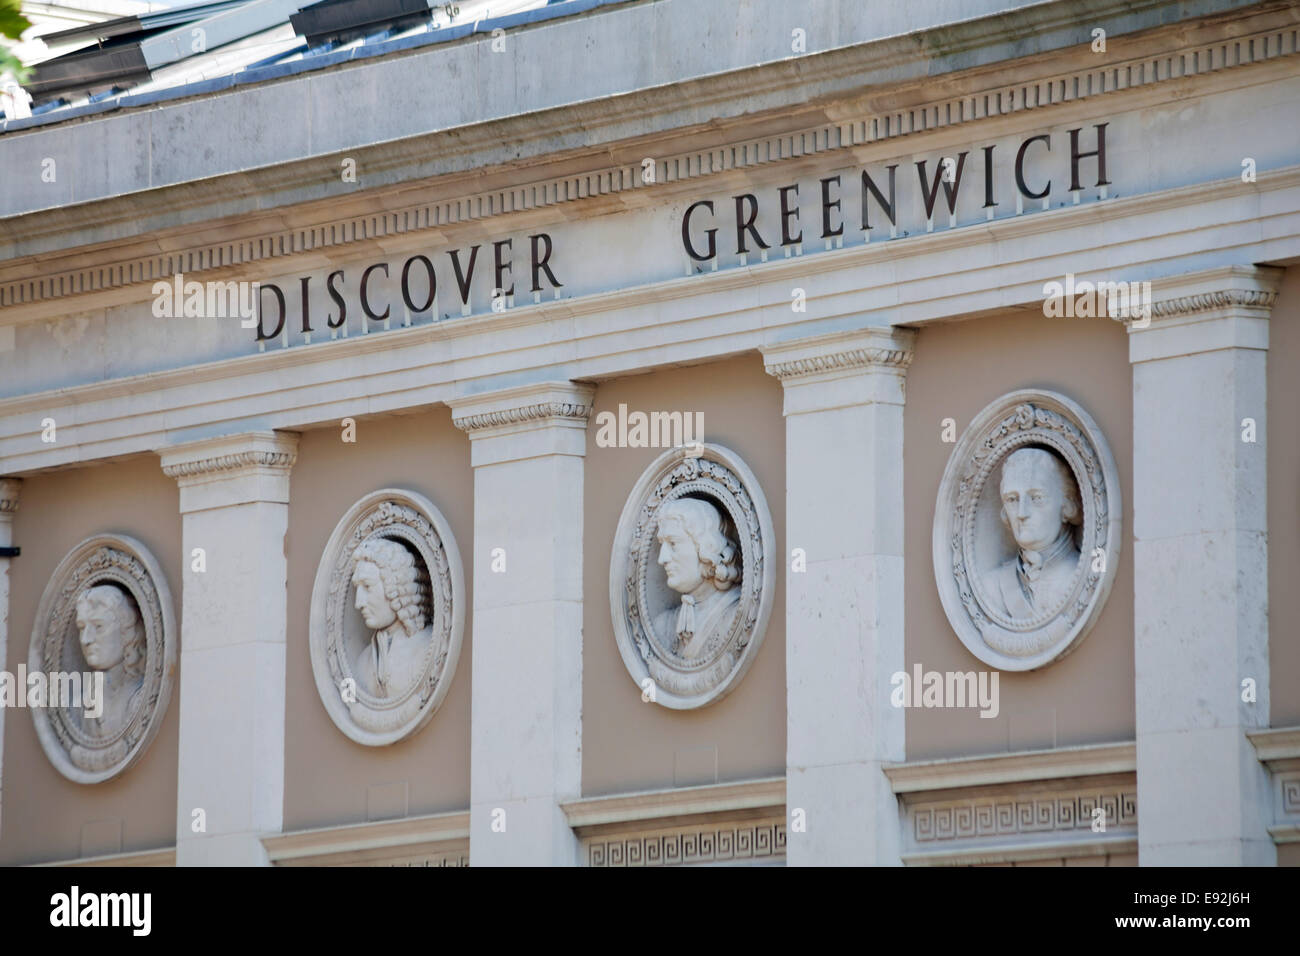 Portraits de Blake Rodney Sandwich Benbow sur façade de bâtiment du centre de visiteurs de découvrir Greenwich à Greenwich, Londres Banque D'Images